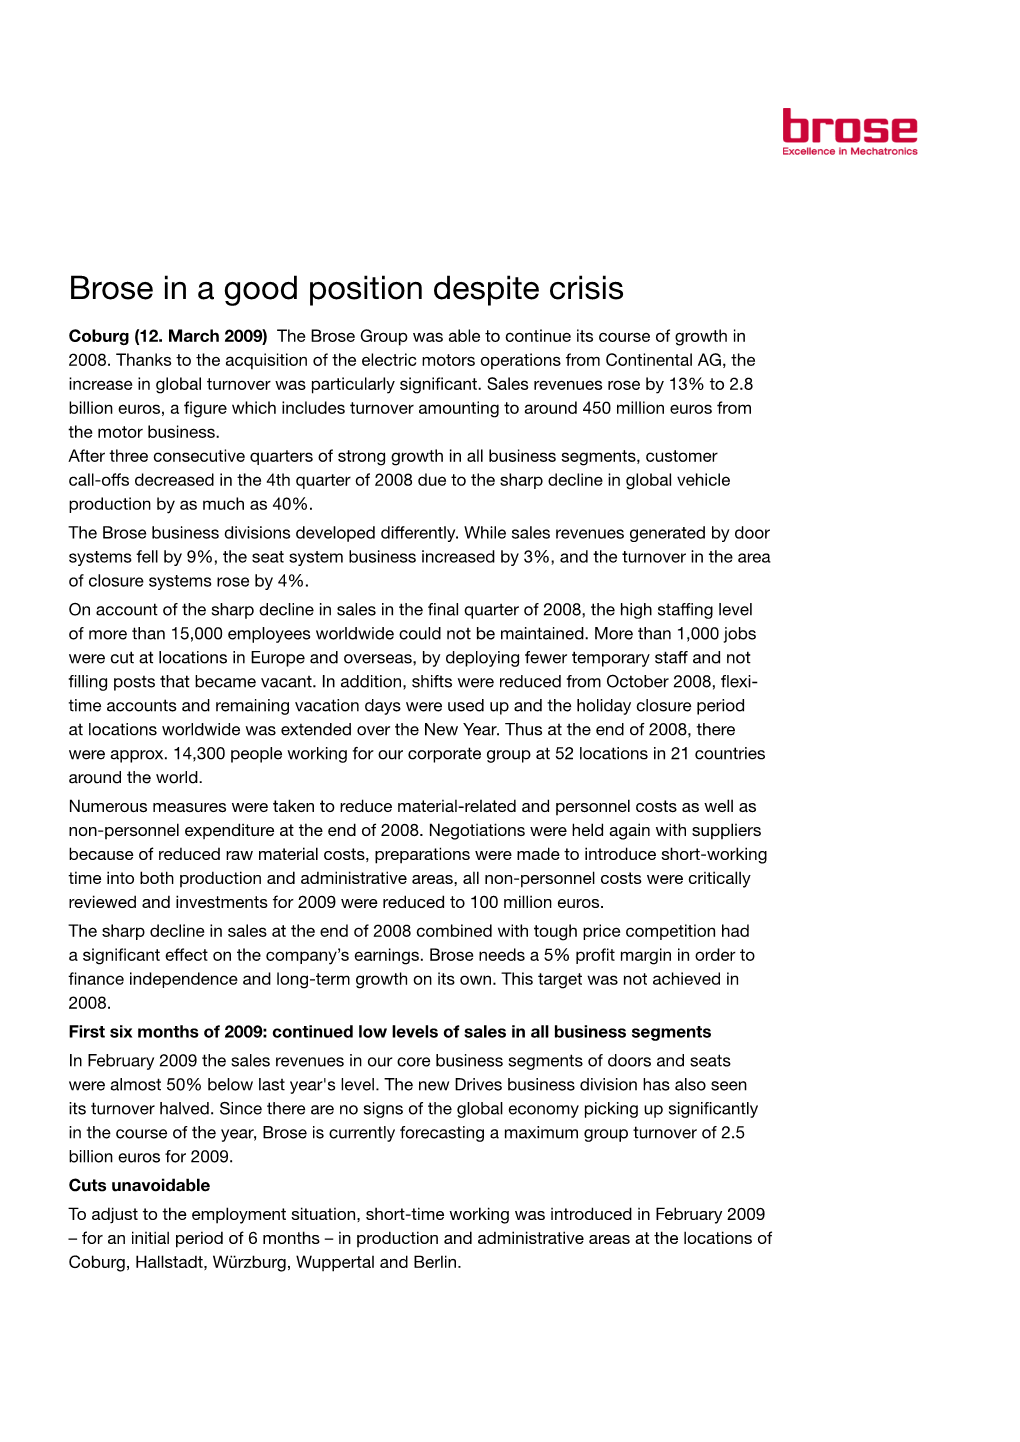 Brose in a Good Position Despite Crisis